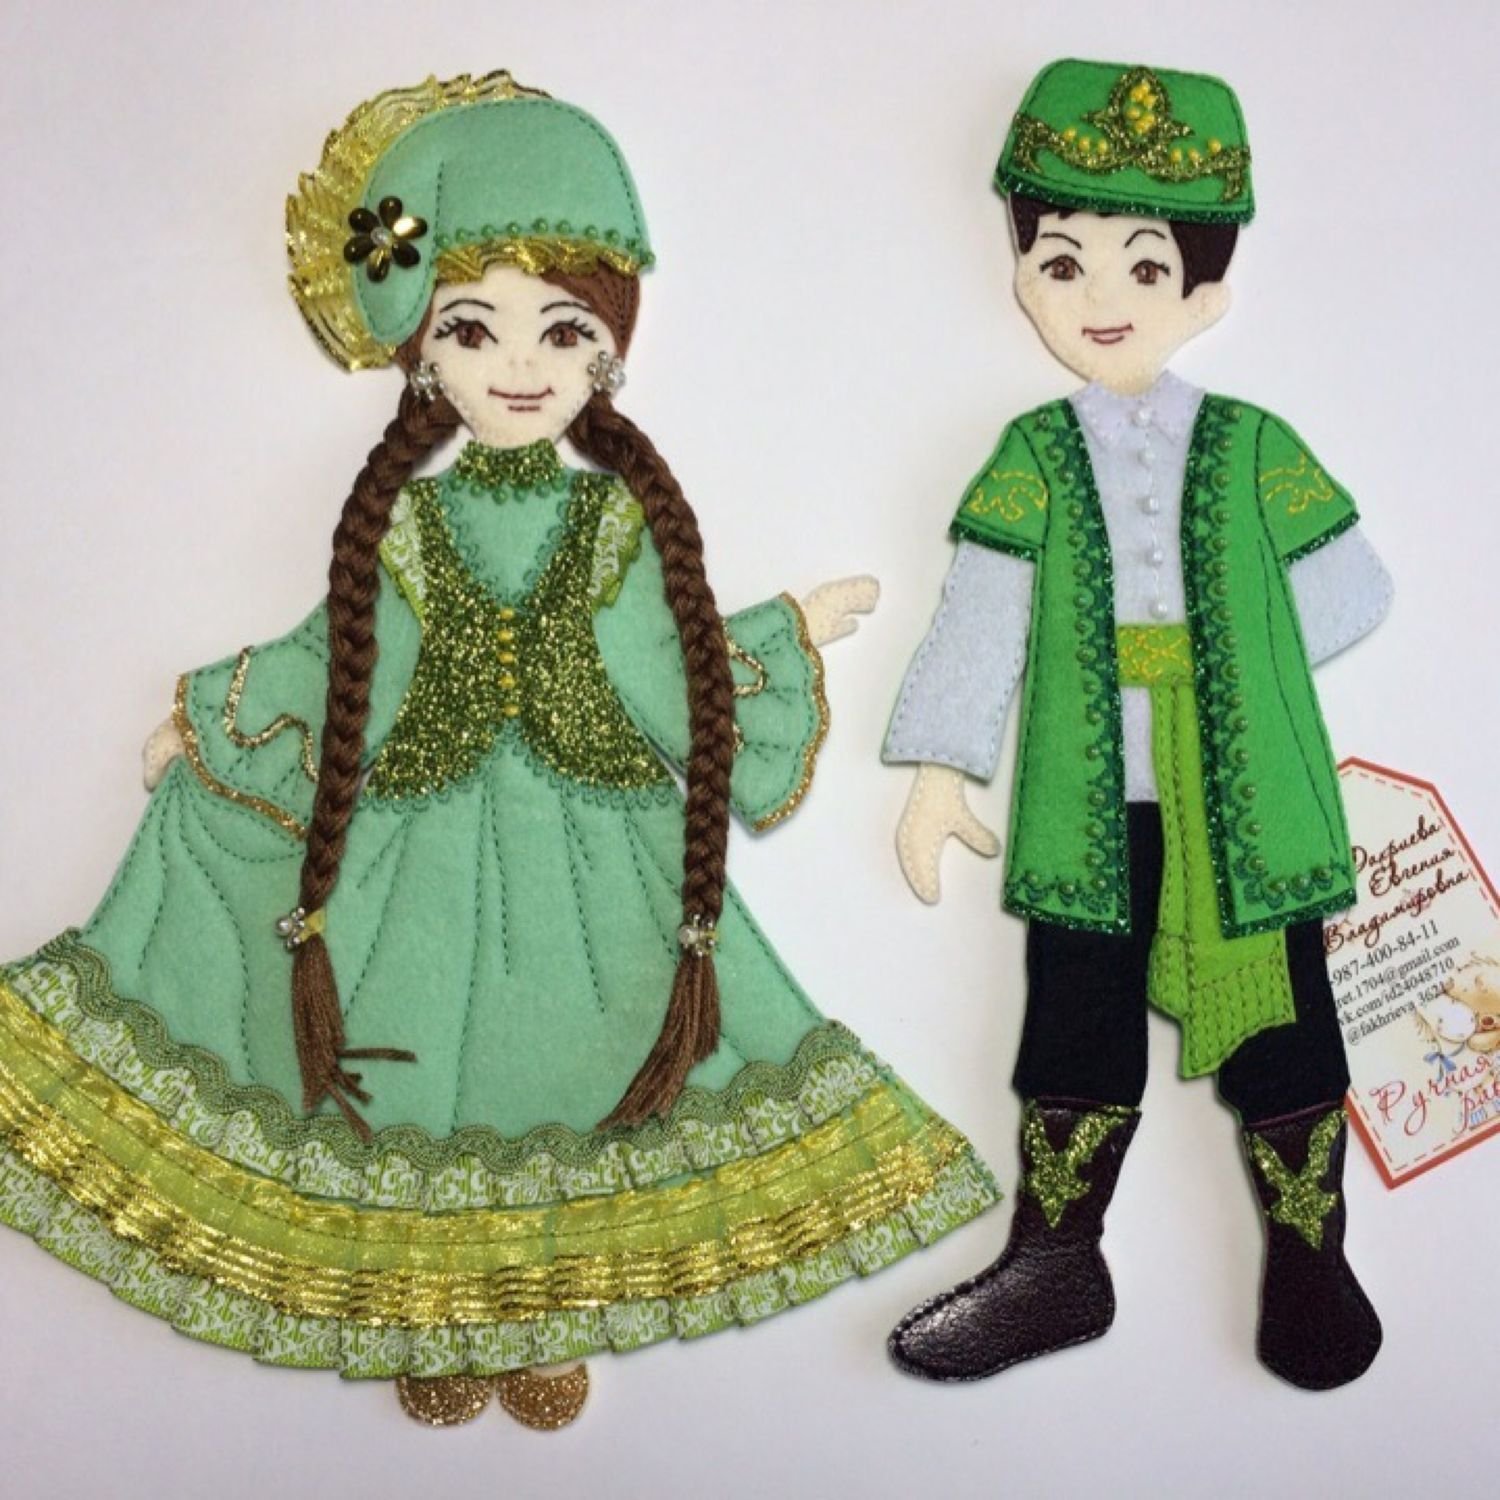 Национальный костюм Татаров рисунок